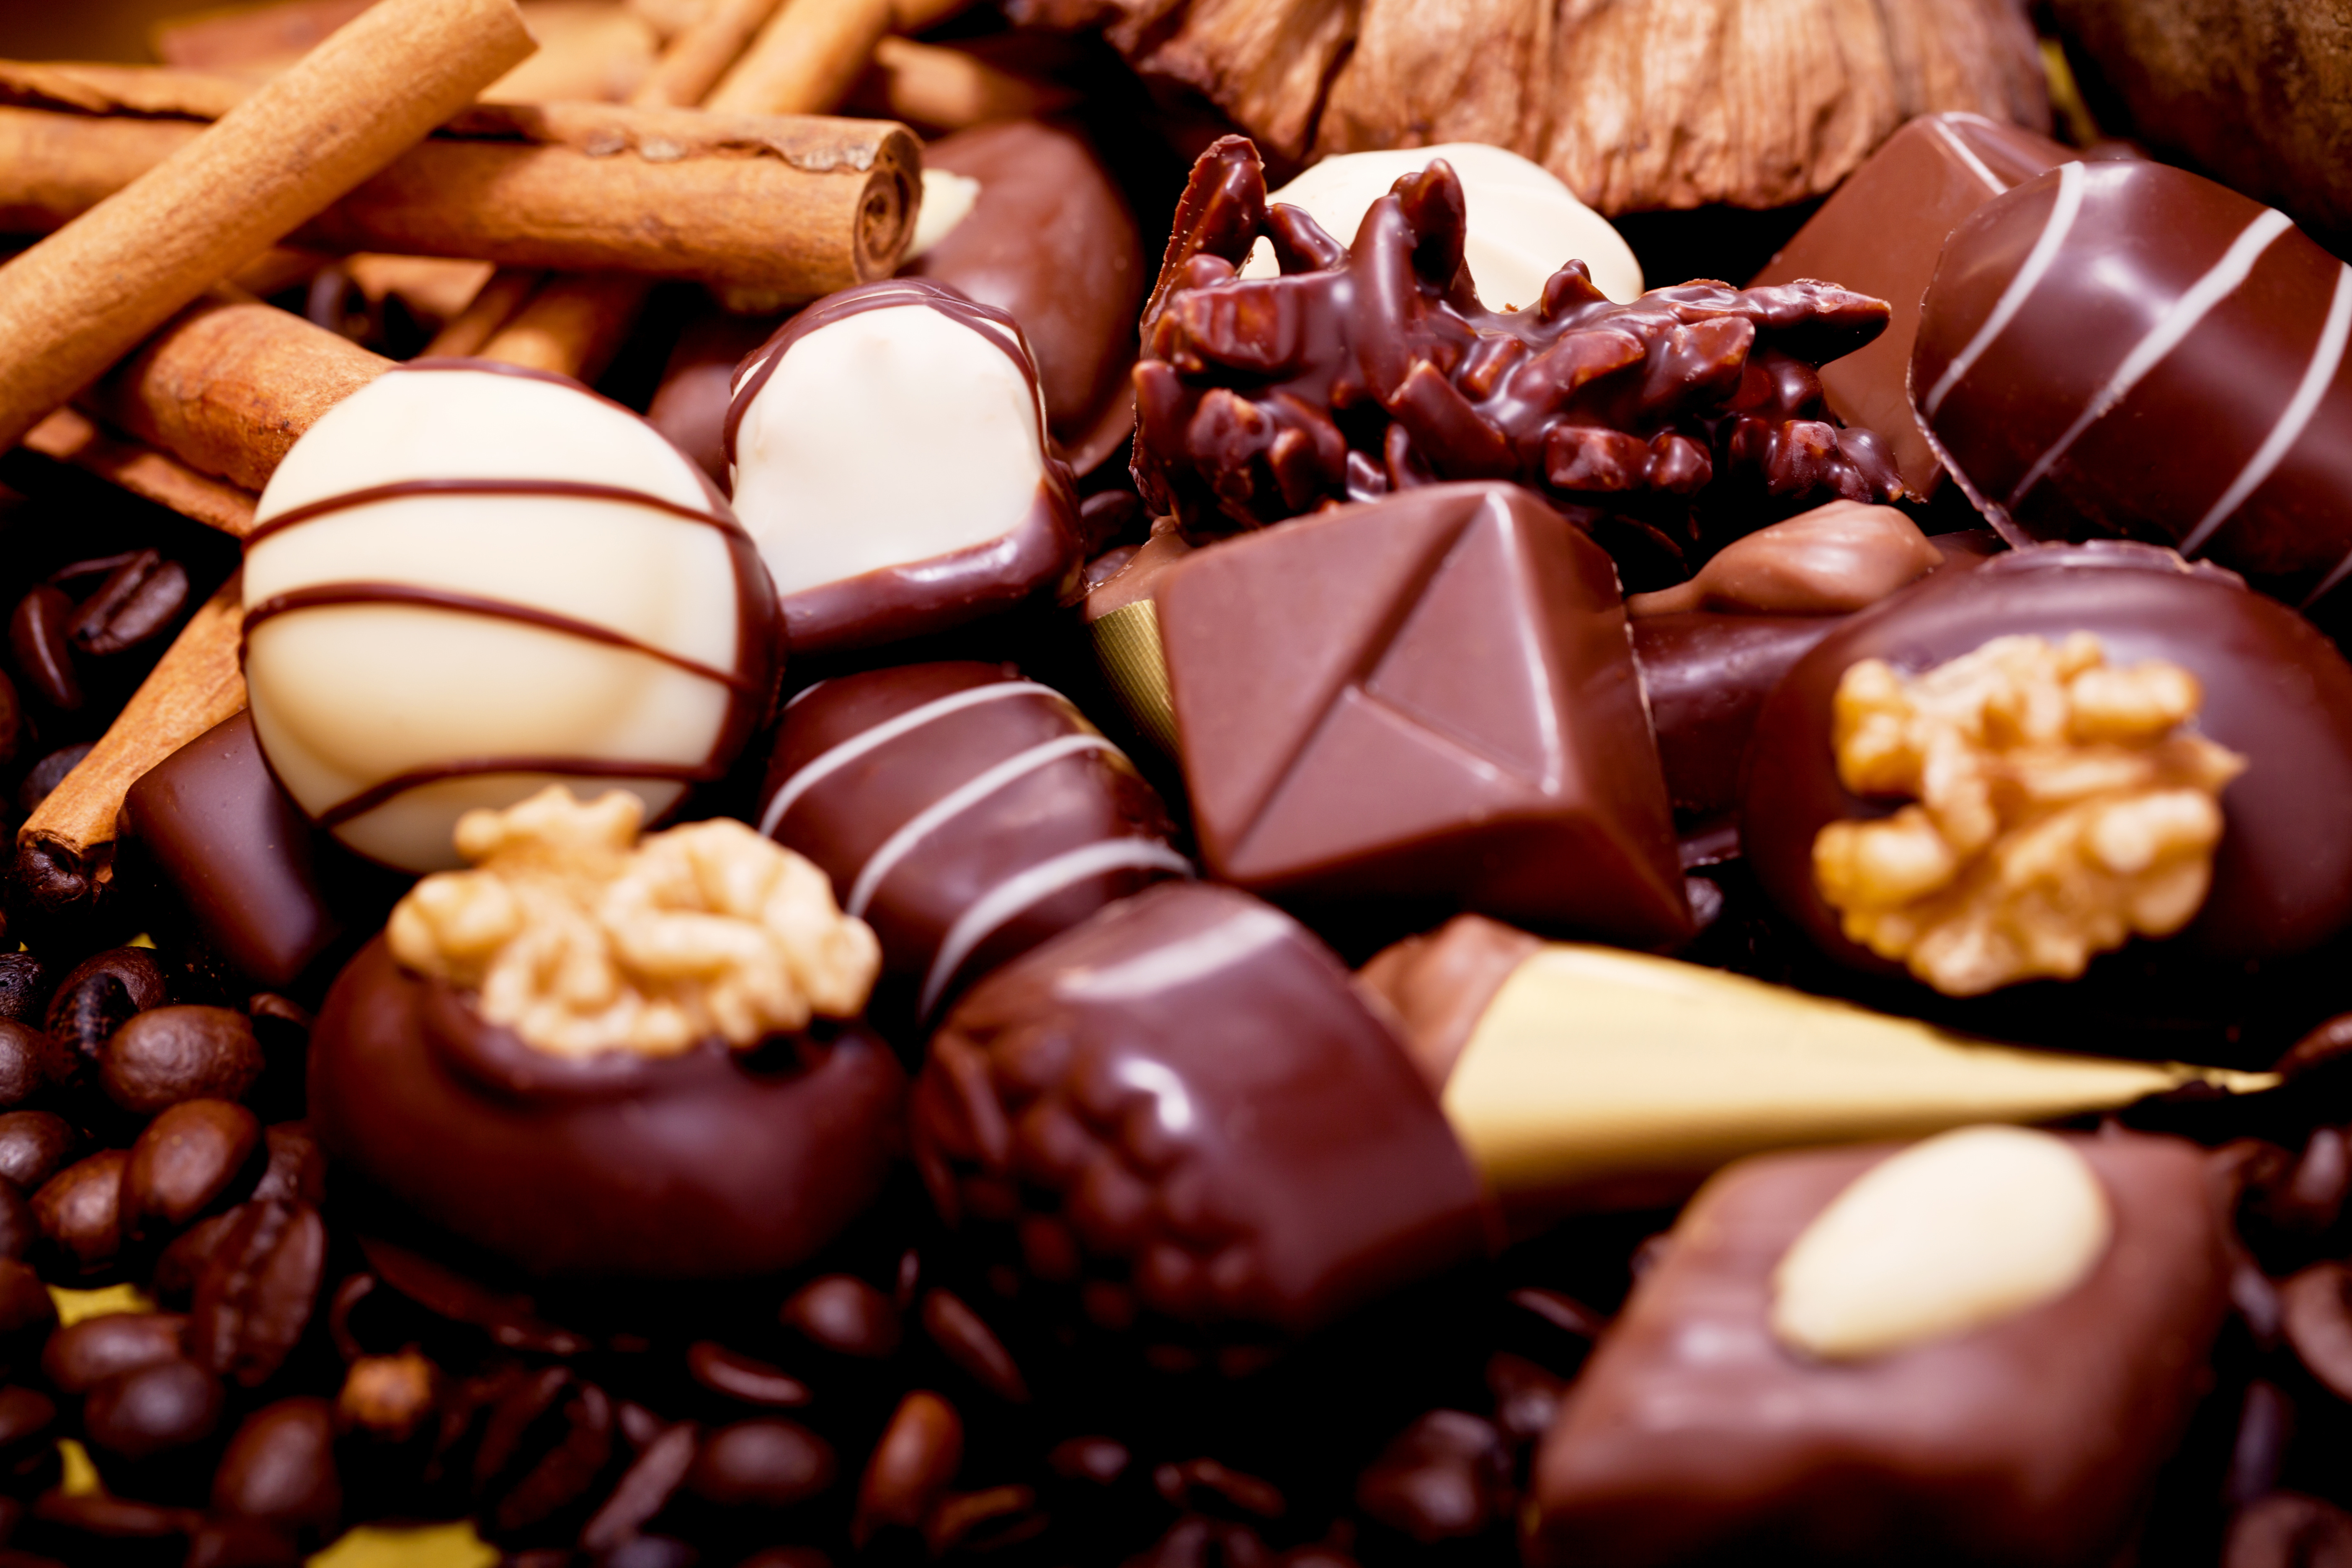 チョコレート壁紙,ギリチョコ,食物,チョコレート,ボンボン,甘味